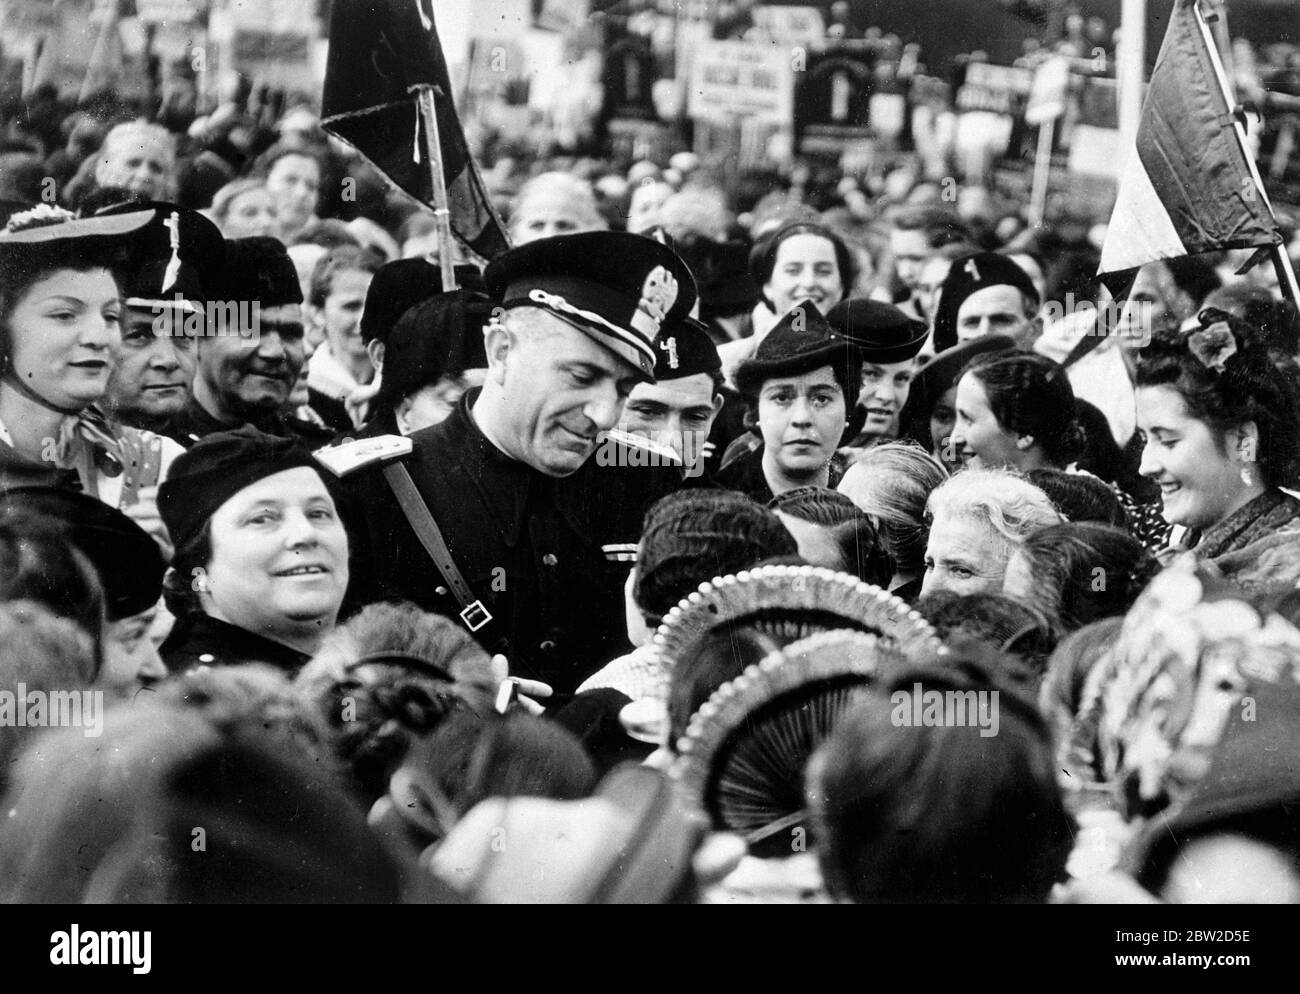 Commendatore Rena Parenti, Chef der faschistischen Organisation in der Lombardei, Italien, umgeben von Frauenunterstützerinnen, als er am jährlichen Festival der faschistischen Frauen in Monza, Lombardei, teilnahm. 26. Oktober 1938 Stockfoto